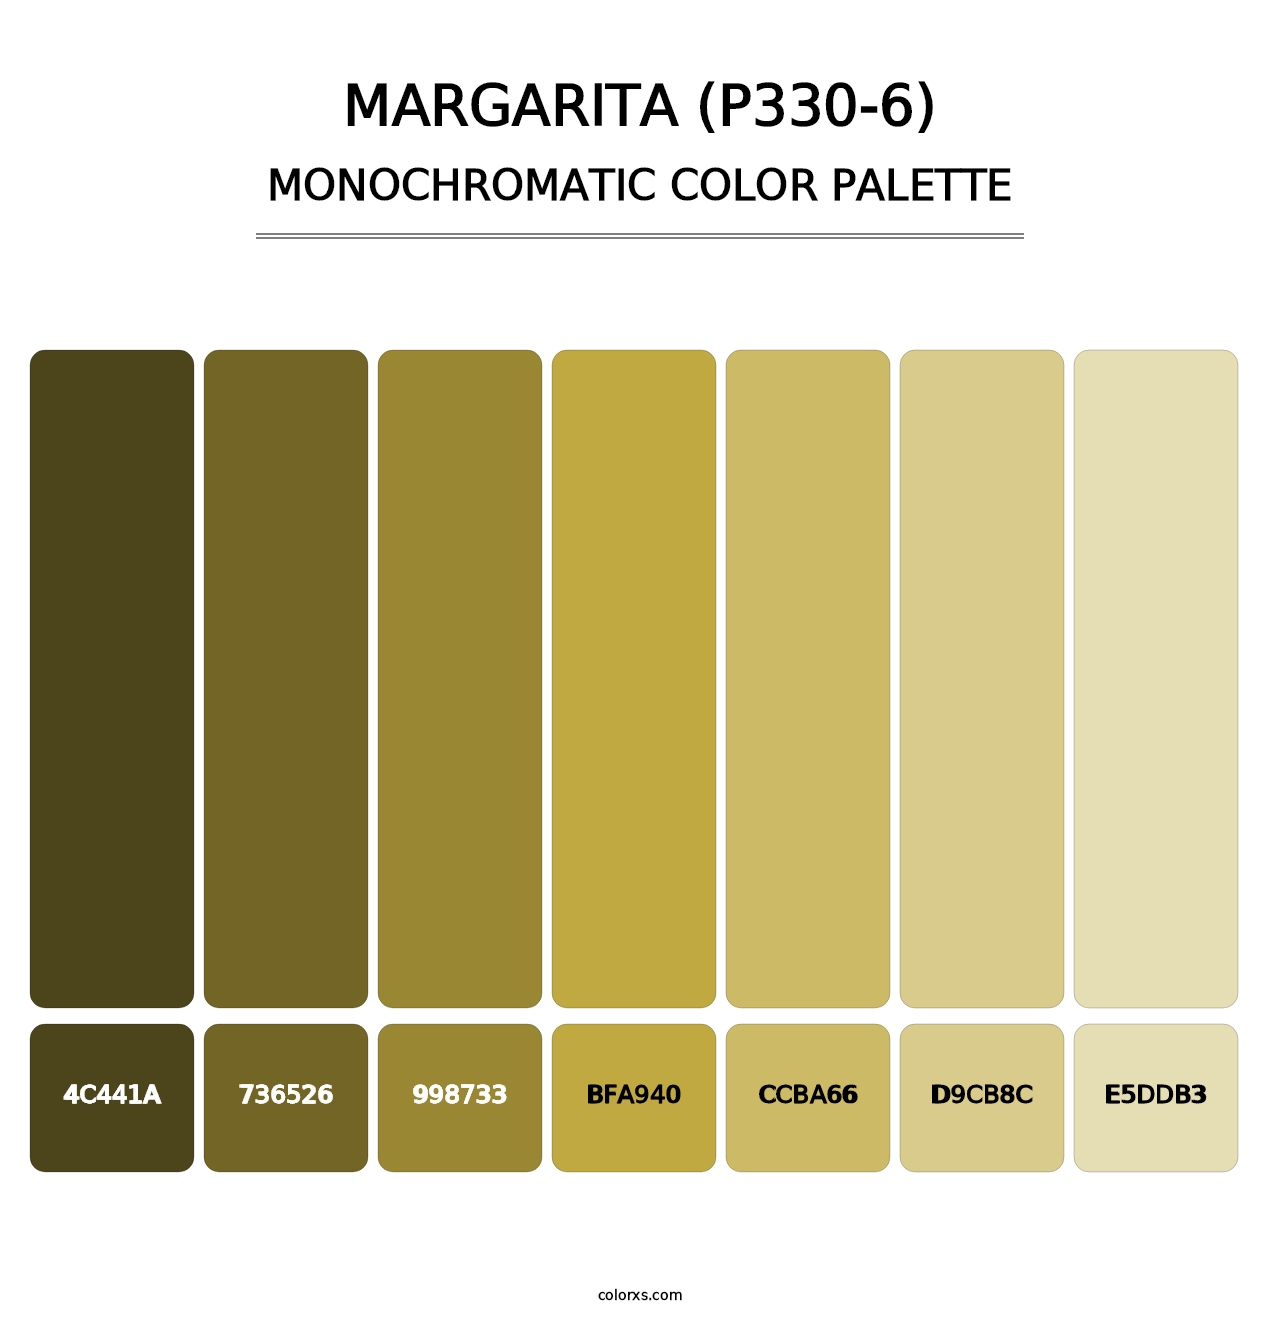 Margarita (P330-6) - Monochromatic Color Palette